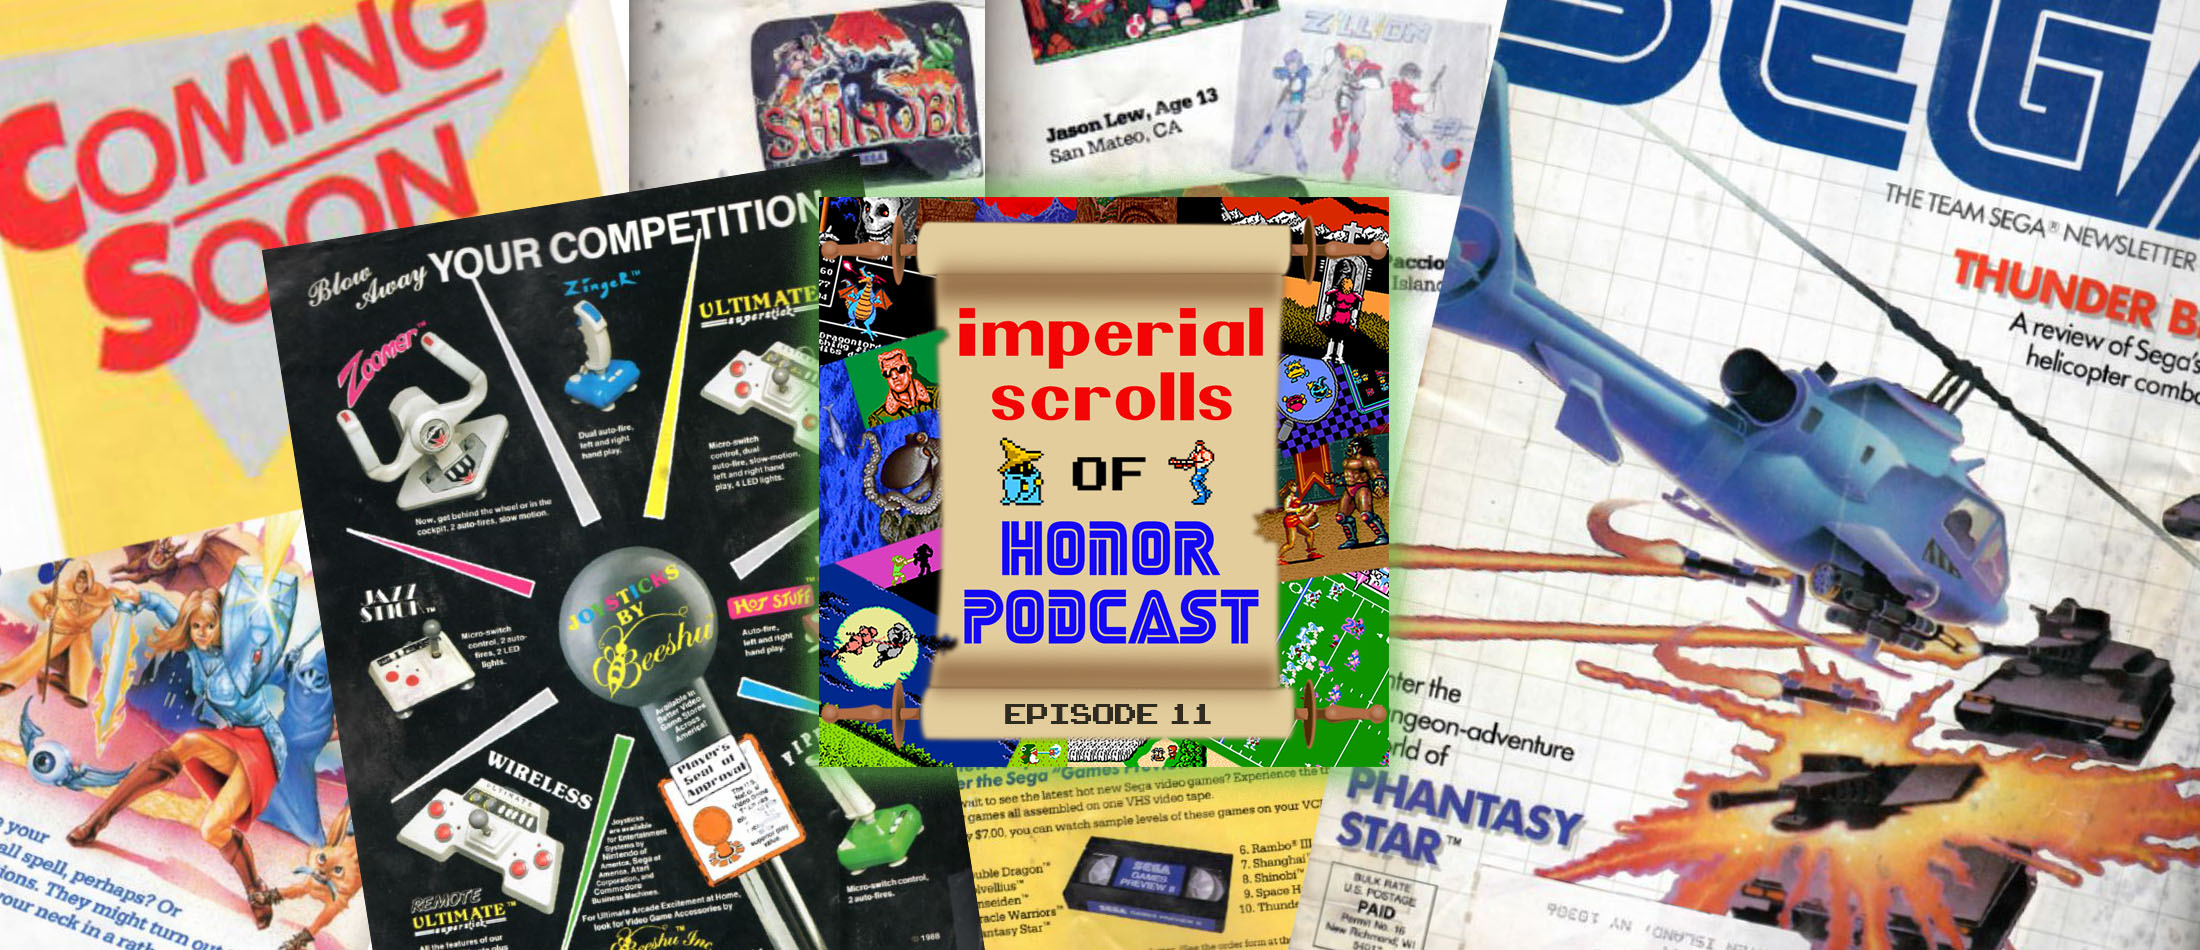 Imperial Scrolls of Honor Podcast - Episode 11 - Sega Team Newsletter #4